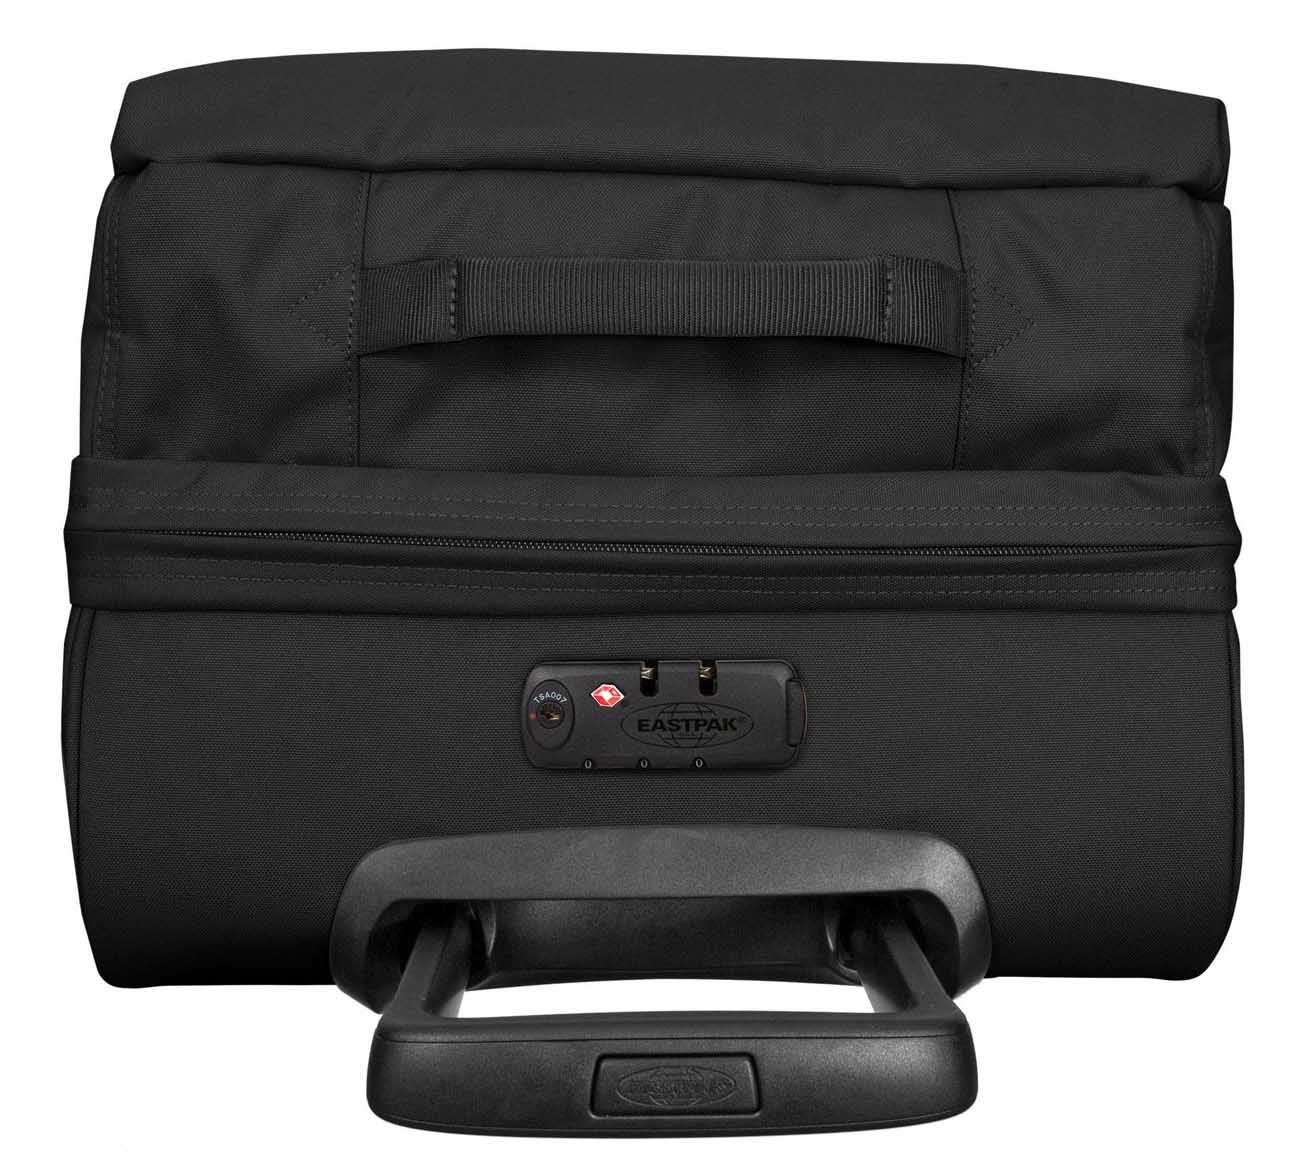 Eastpak Strapverz S Wheeled Bag/Suitcase